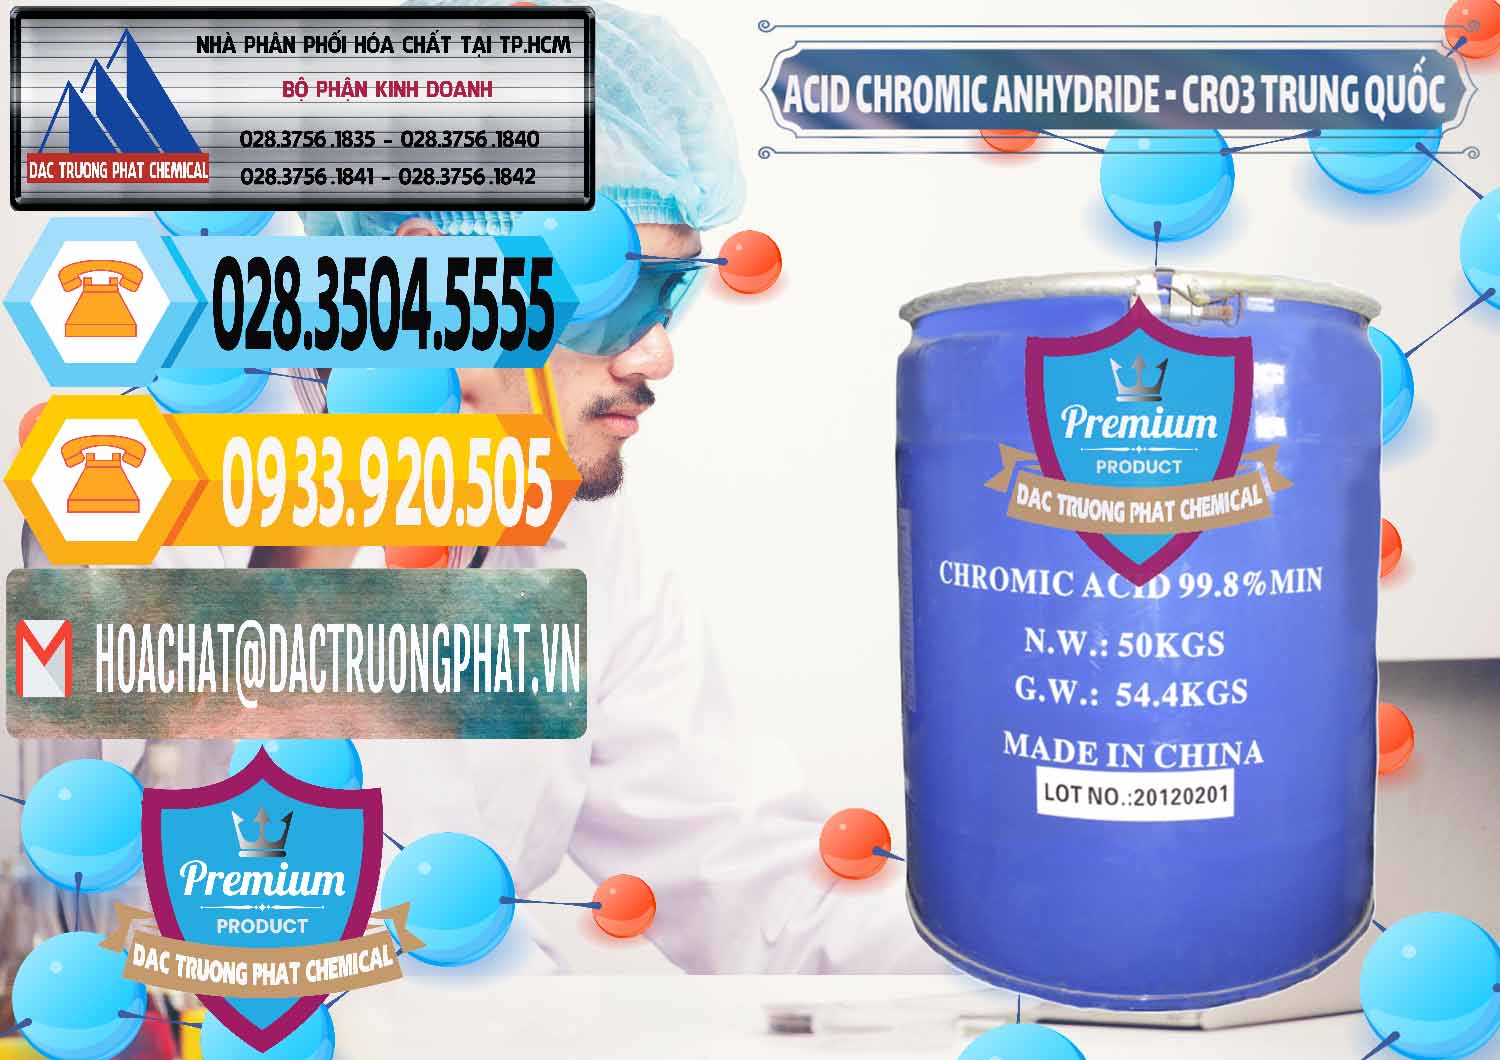 Cty nhập khẩu _ bán Acid Chromic Anhydride - Cromic CRO3 Trung Quốc China - 0007 - Nơi phân phối ( nhập khẩu ) hóa chất tại TP.HCM - hoachattayrua.net